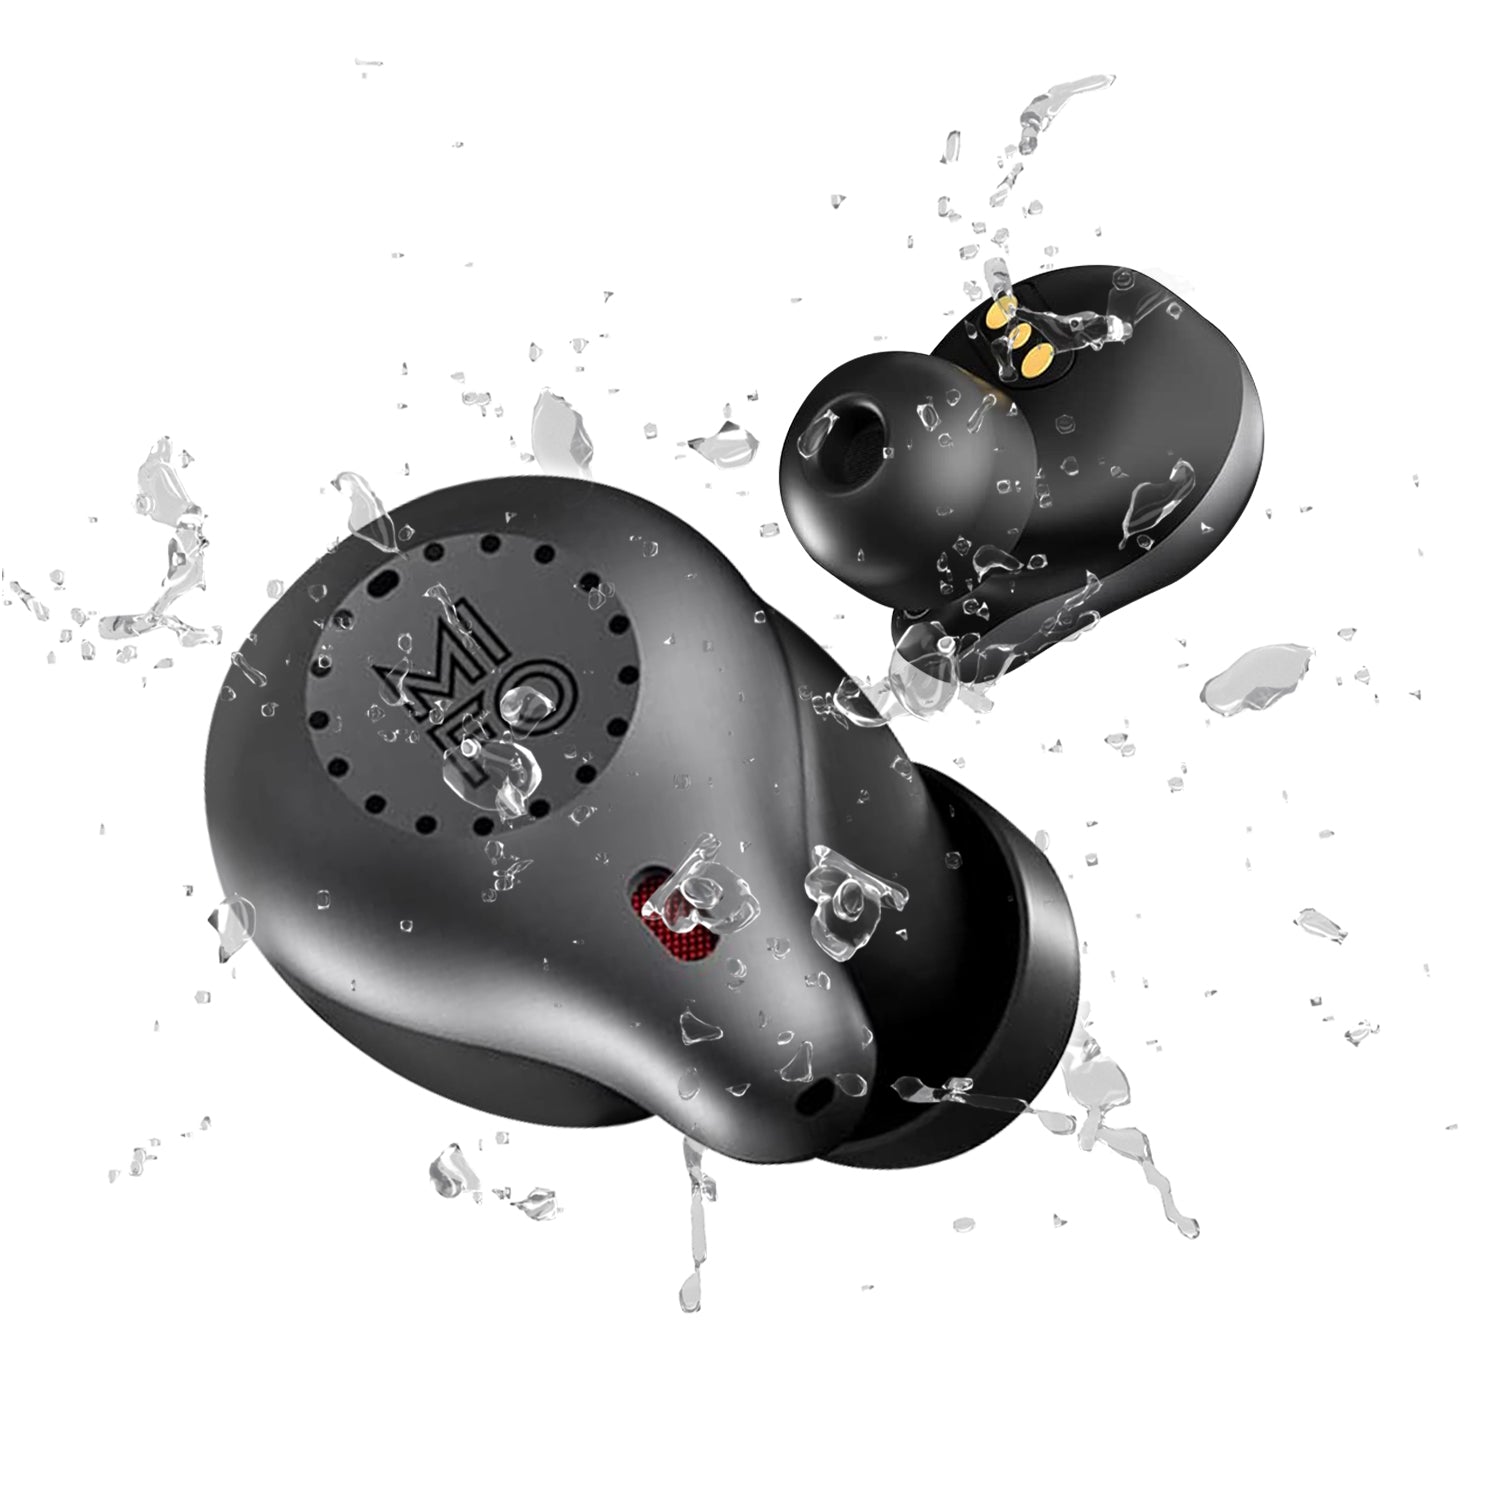 Best IPX7 Earbuds - Mifo O5 Plus Gen 2 Touch - Waterproof Earbuds